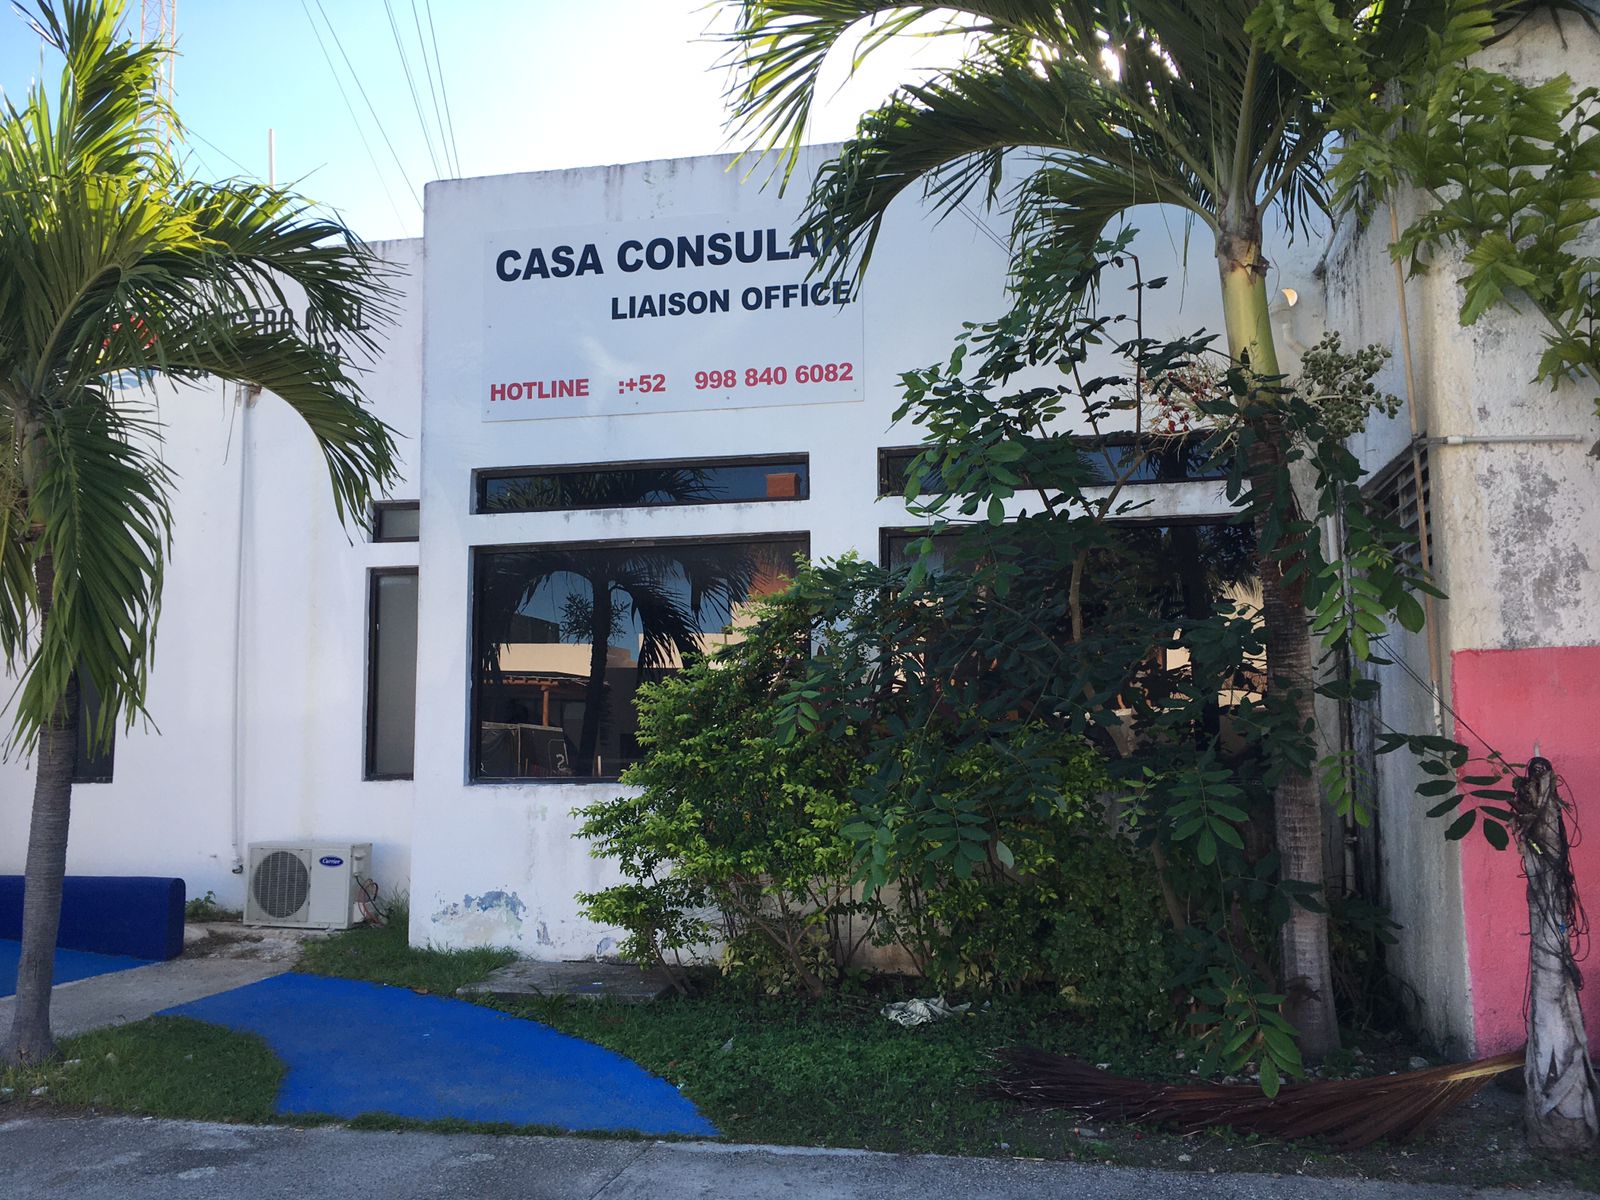 Casa Consular